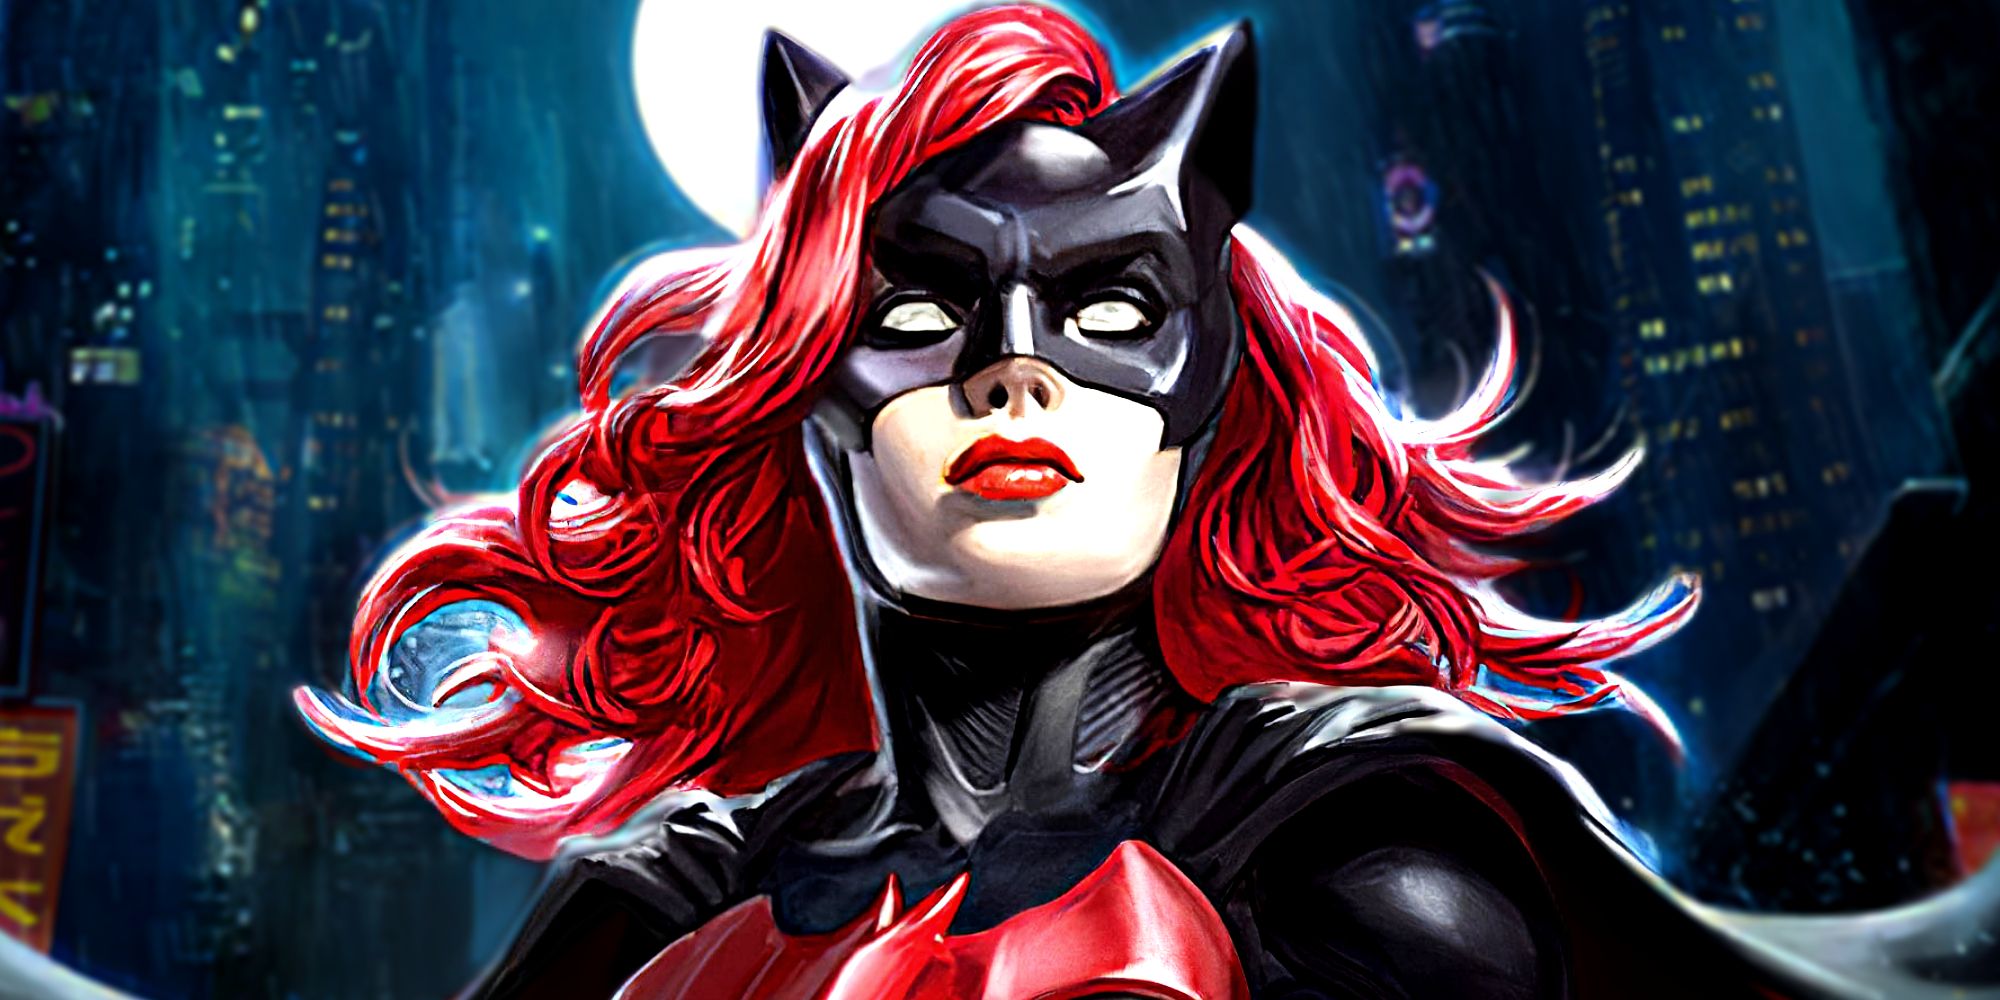 Kate Kane a.k.a. Batwoman in DC Comics